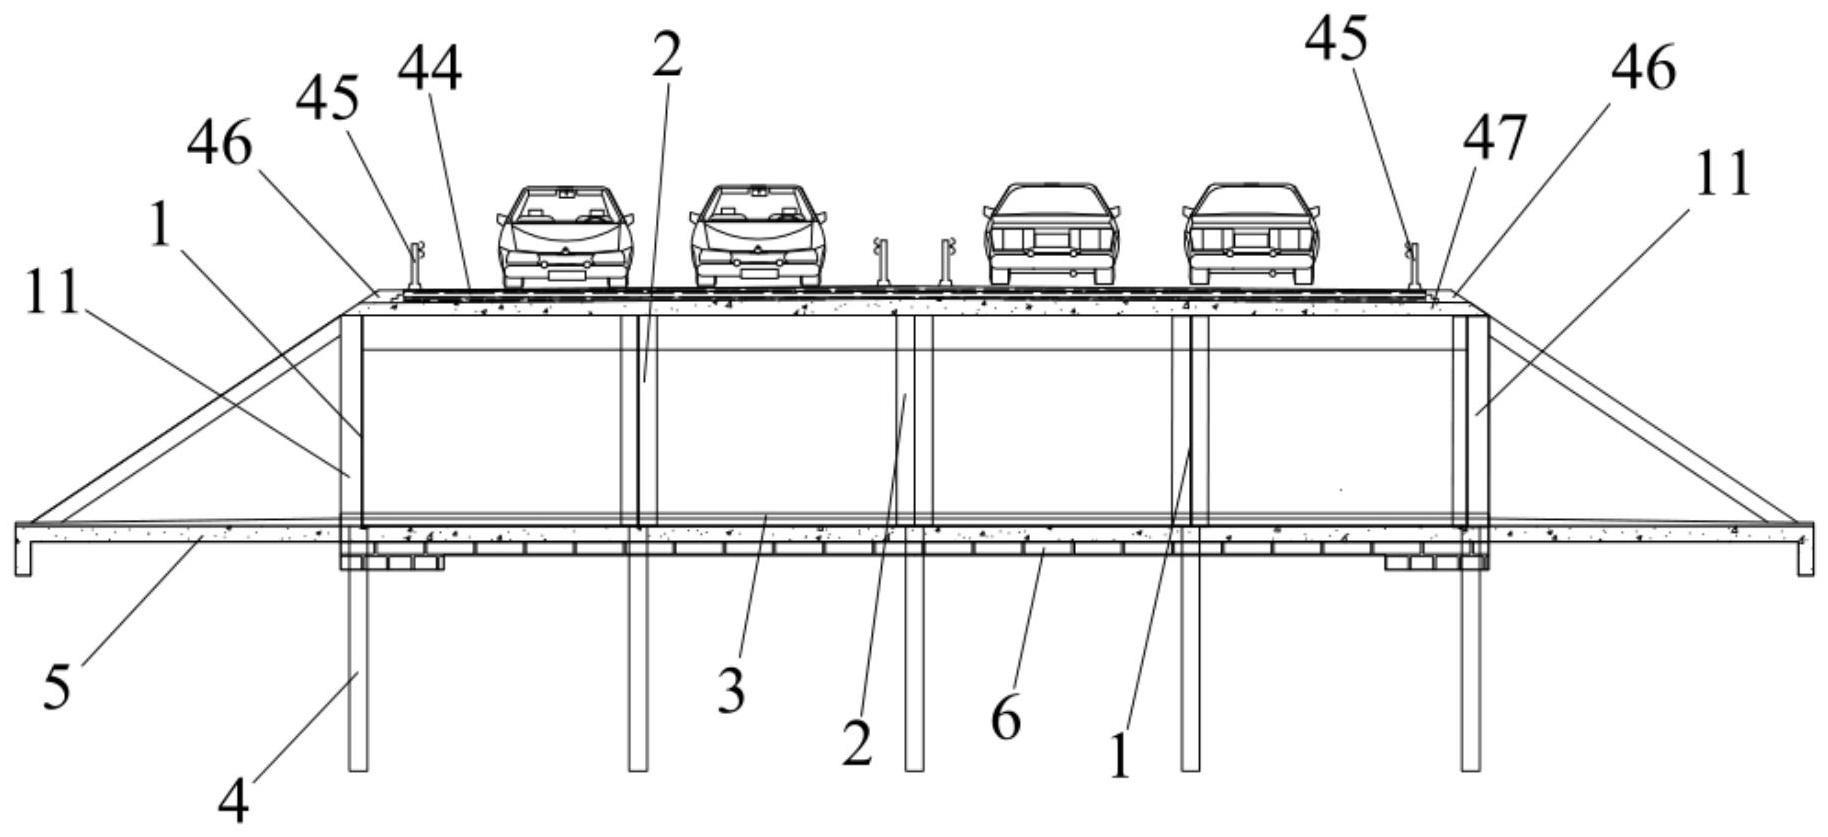 高速公路箱涵结构的制作方法